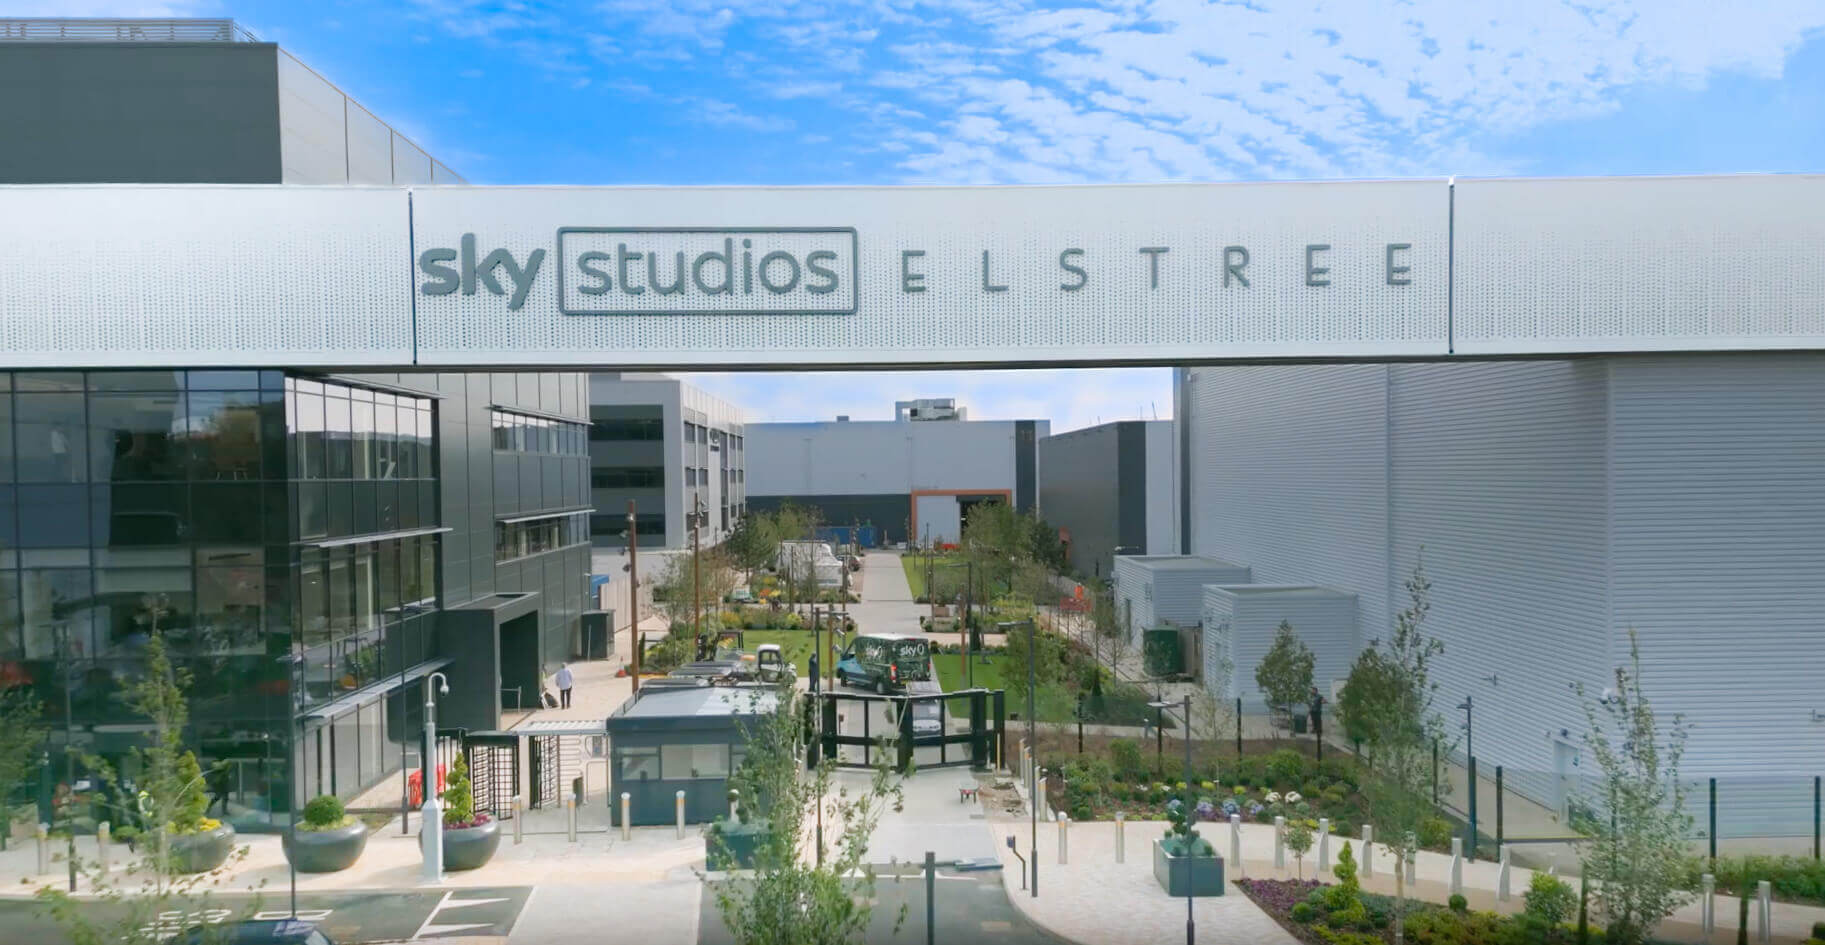 Sky Studios Elstree, Borehamwood, UK